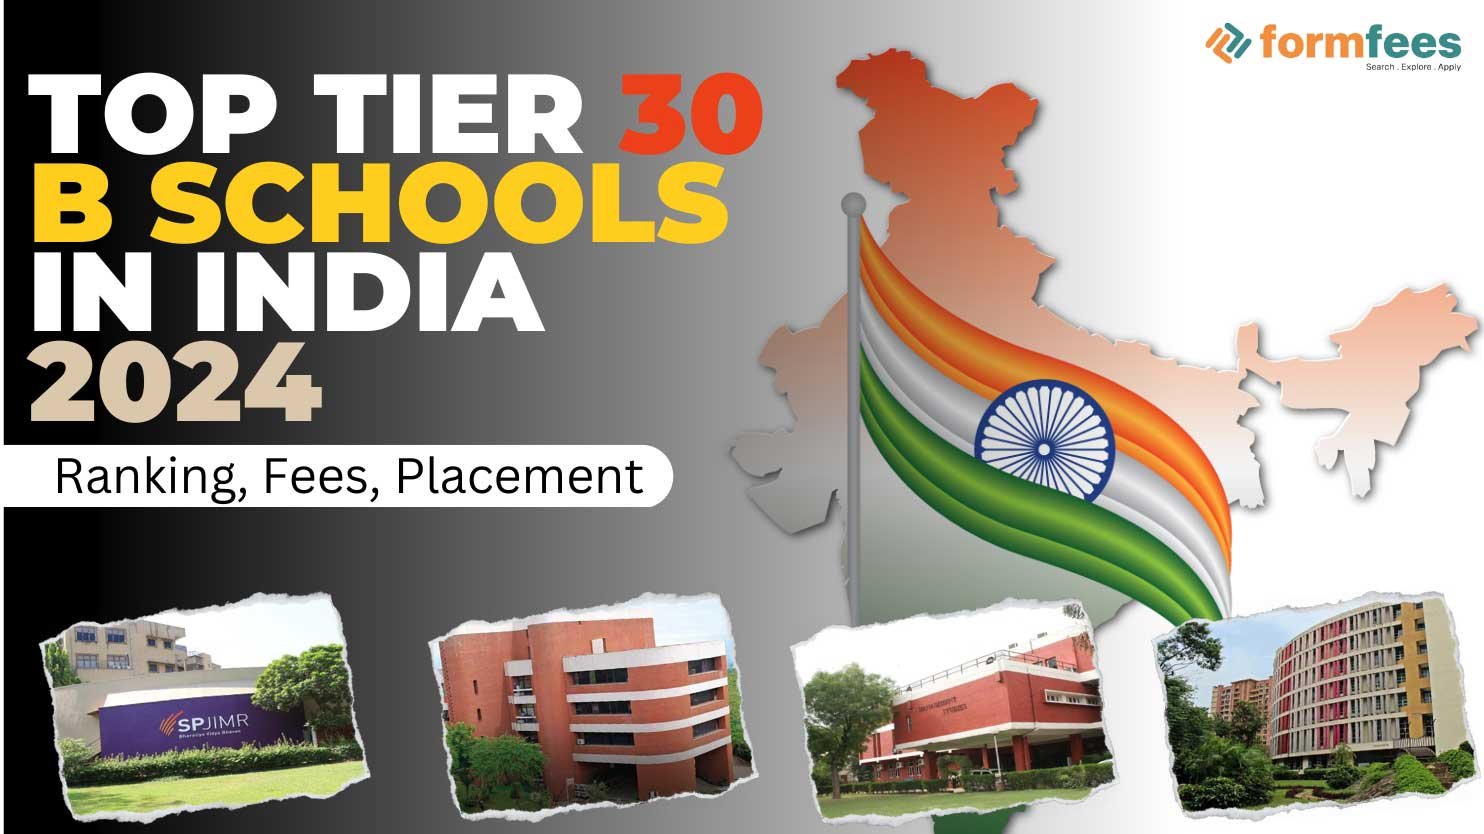 Top Tier 30 B Schools In India 2024 